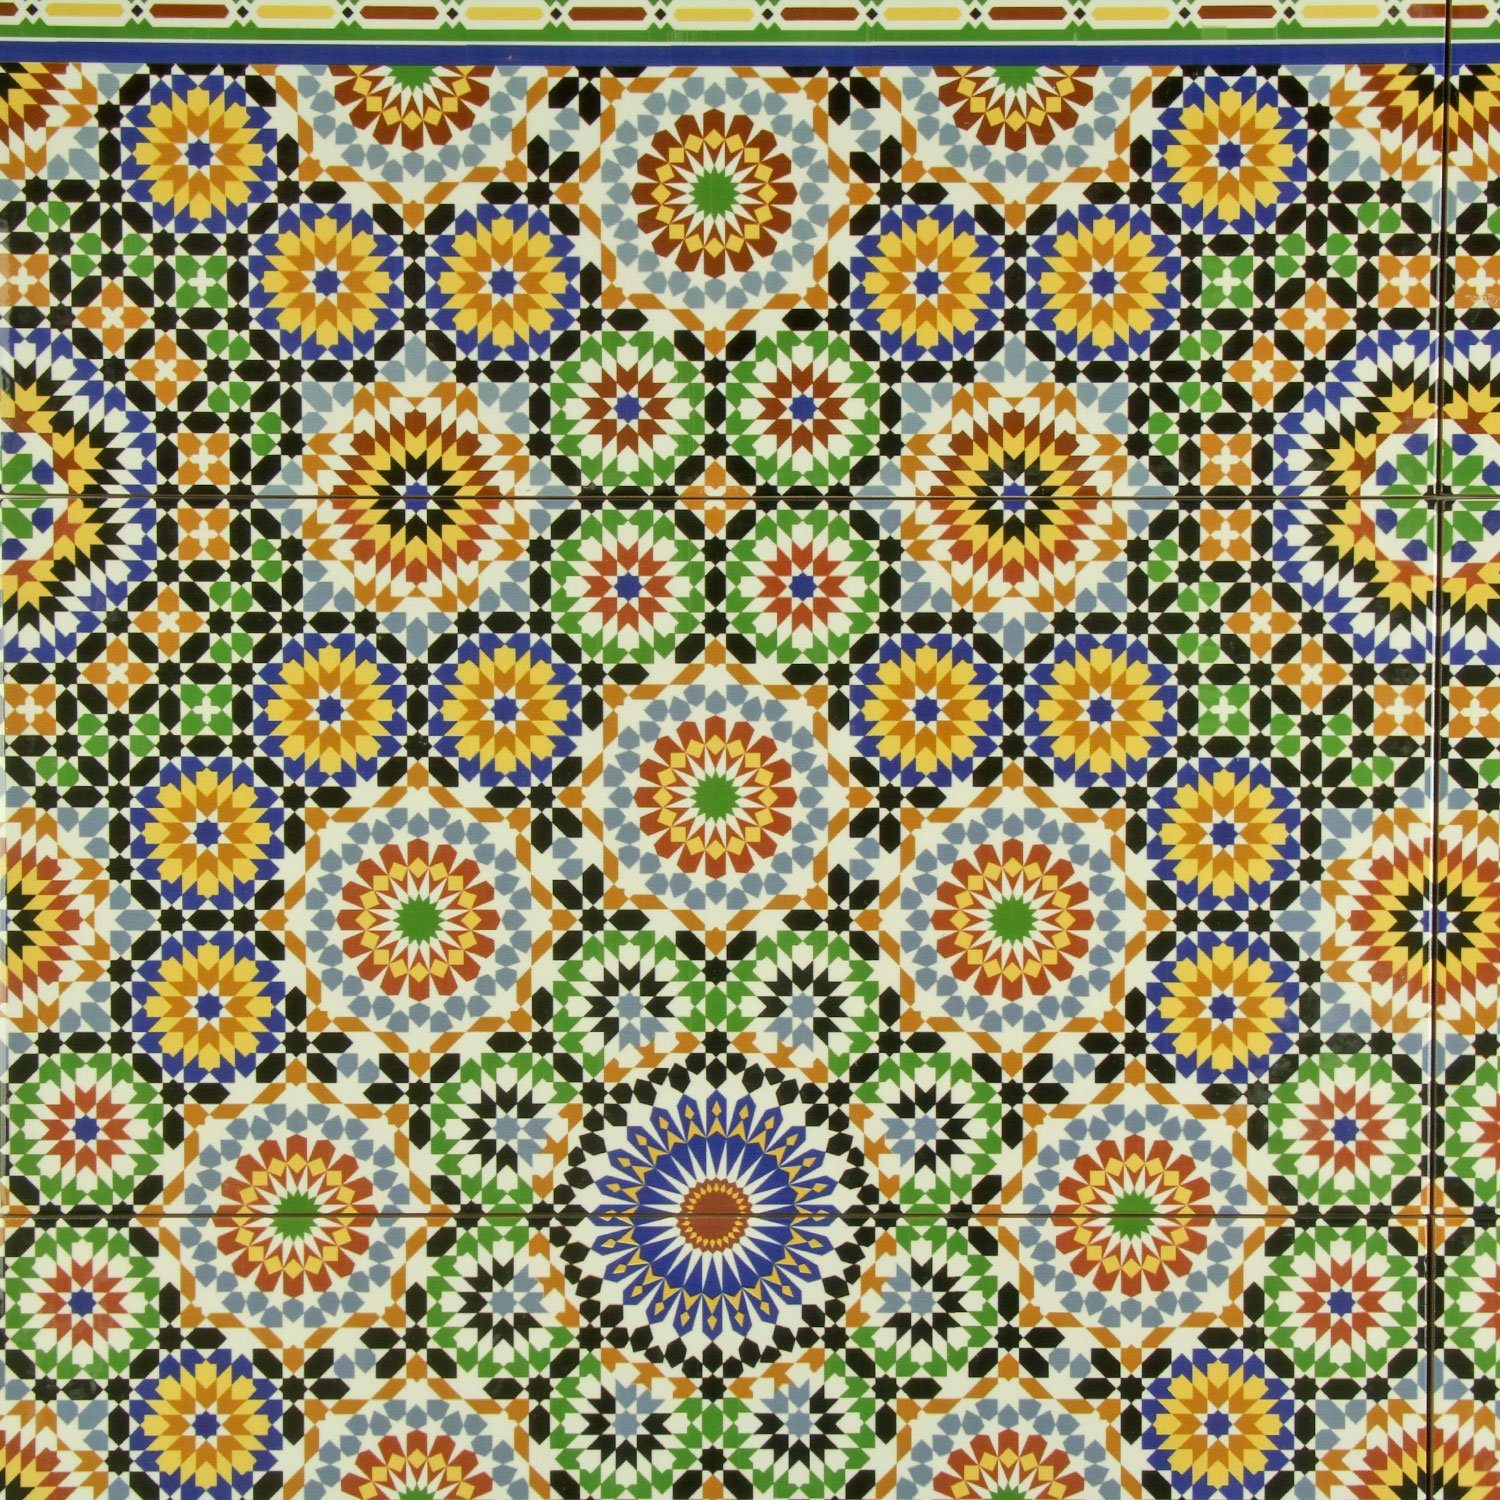 Casa Moro Wandfliese Orientalische Fliese Temara 50x25 cm 1qm Wandfliesen  bunt, marokkanische Fliesen für Küche Bad Fliesenspiegel, mit Mosaik Endlos  Muster